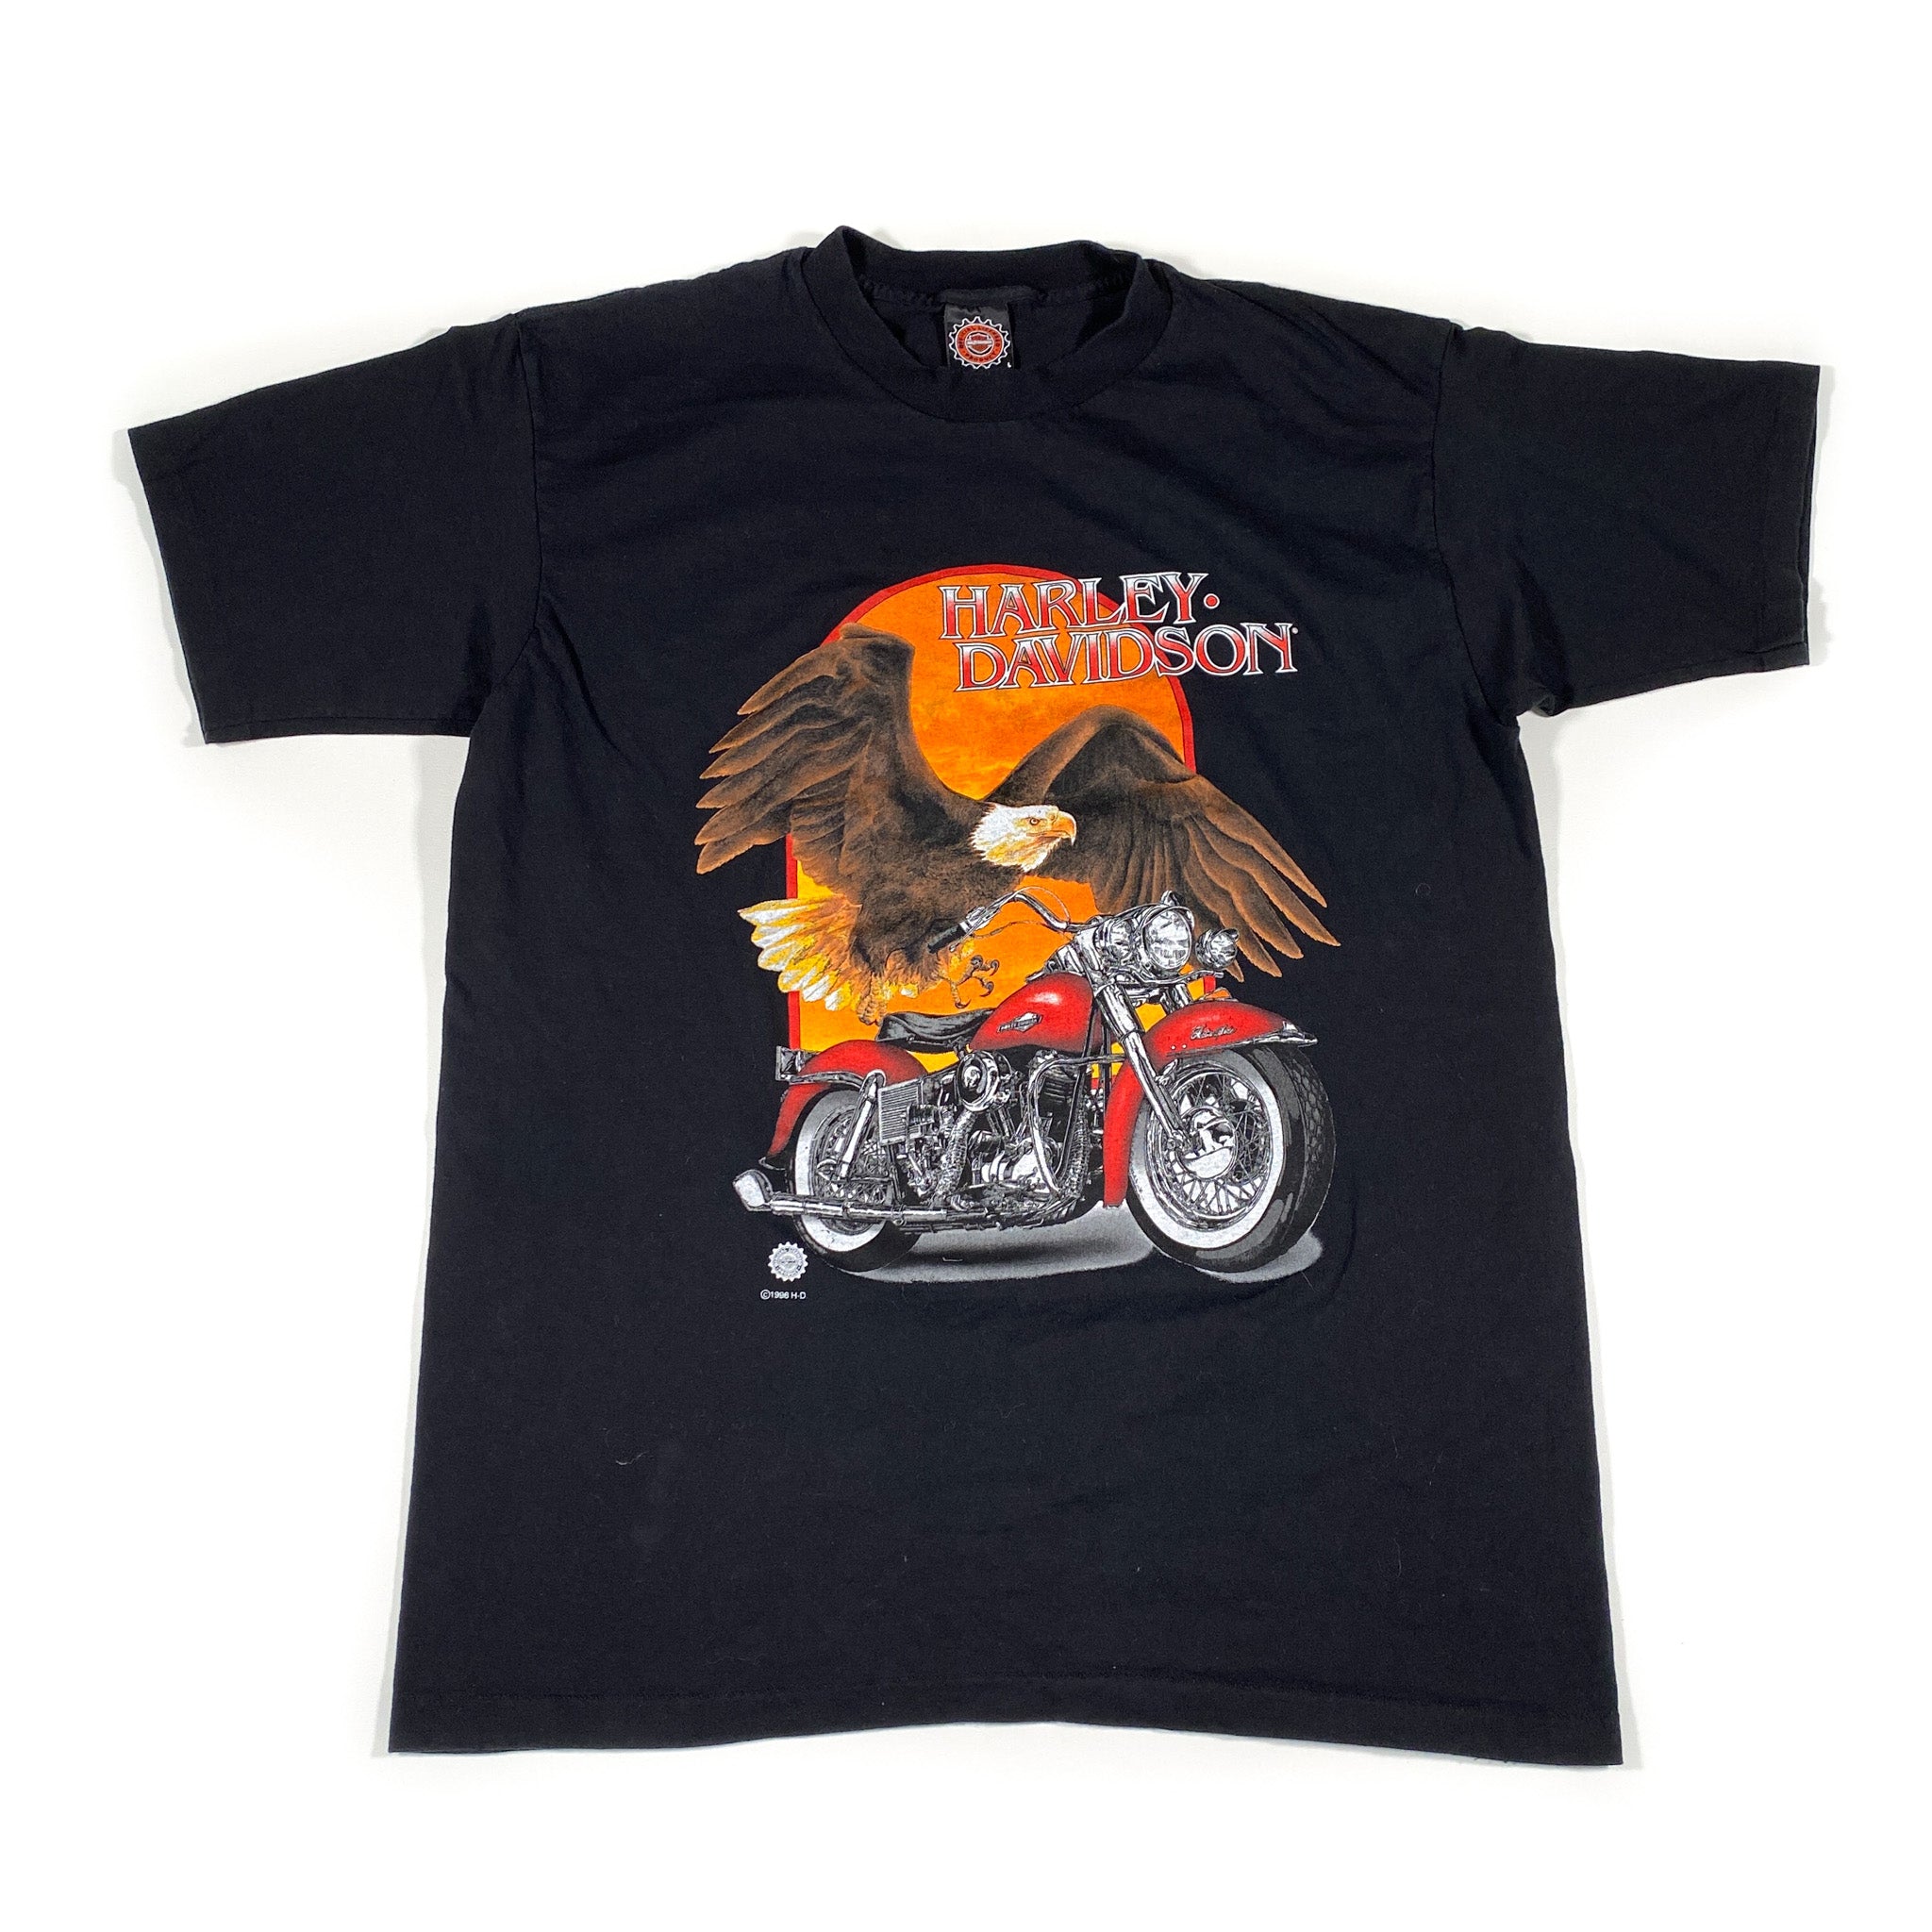 Vintage 1996 Harley Davidson Eagle Motorcycle T-Shirt